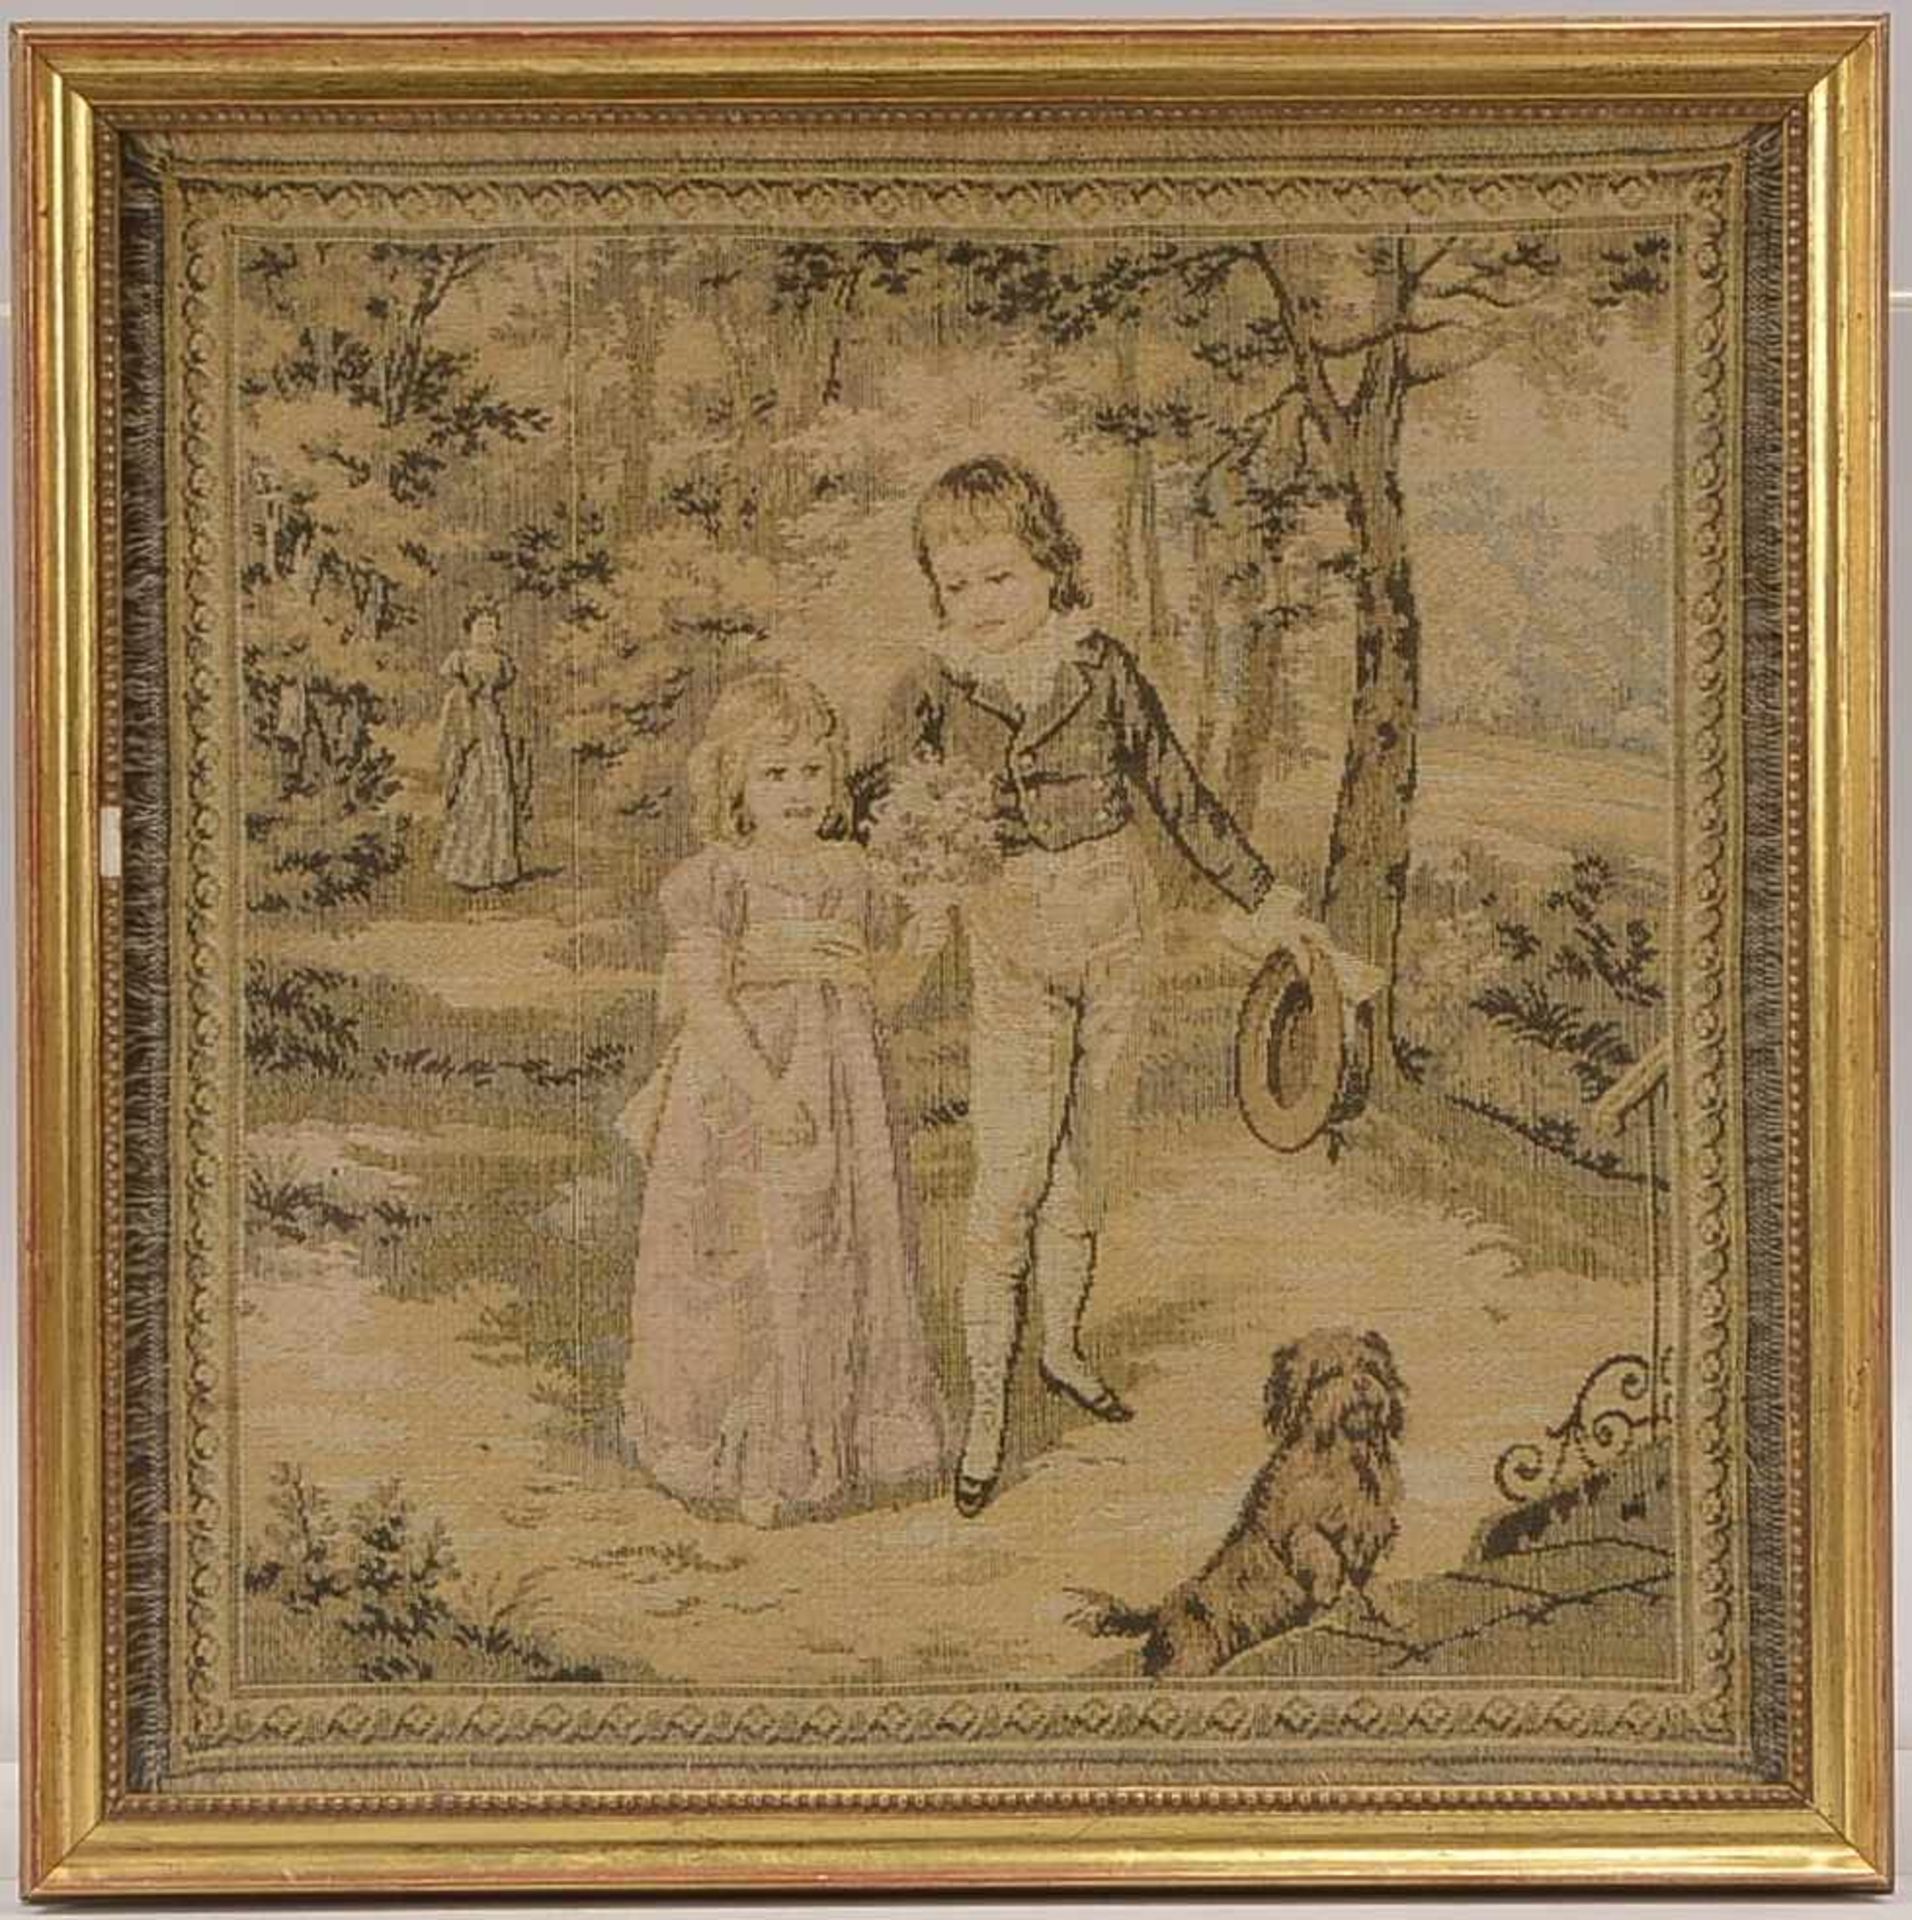 Bildstickerei, 'Kinderszene mit Hund', gerahmt; Bildmaße 26,5 x 26,5 cm, Rahmenmaße 29 x 29 cm